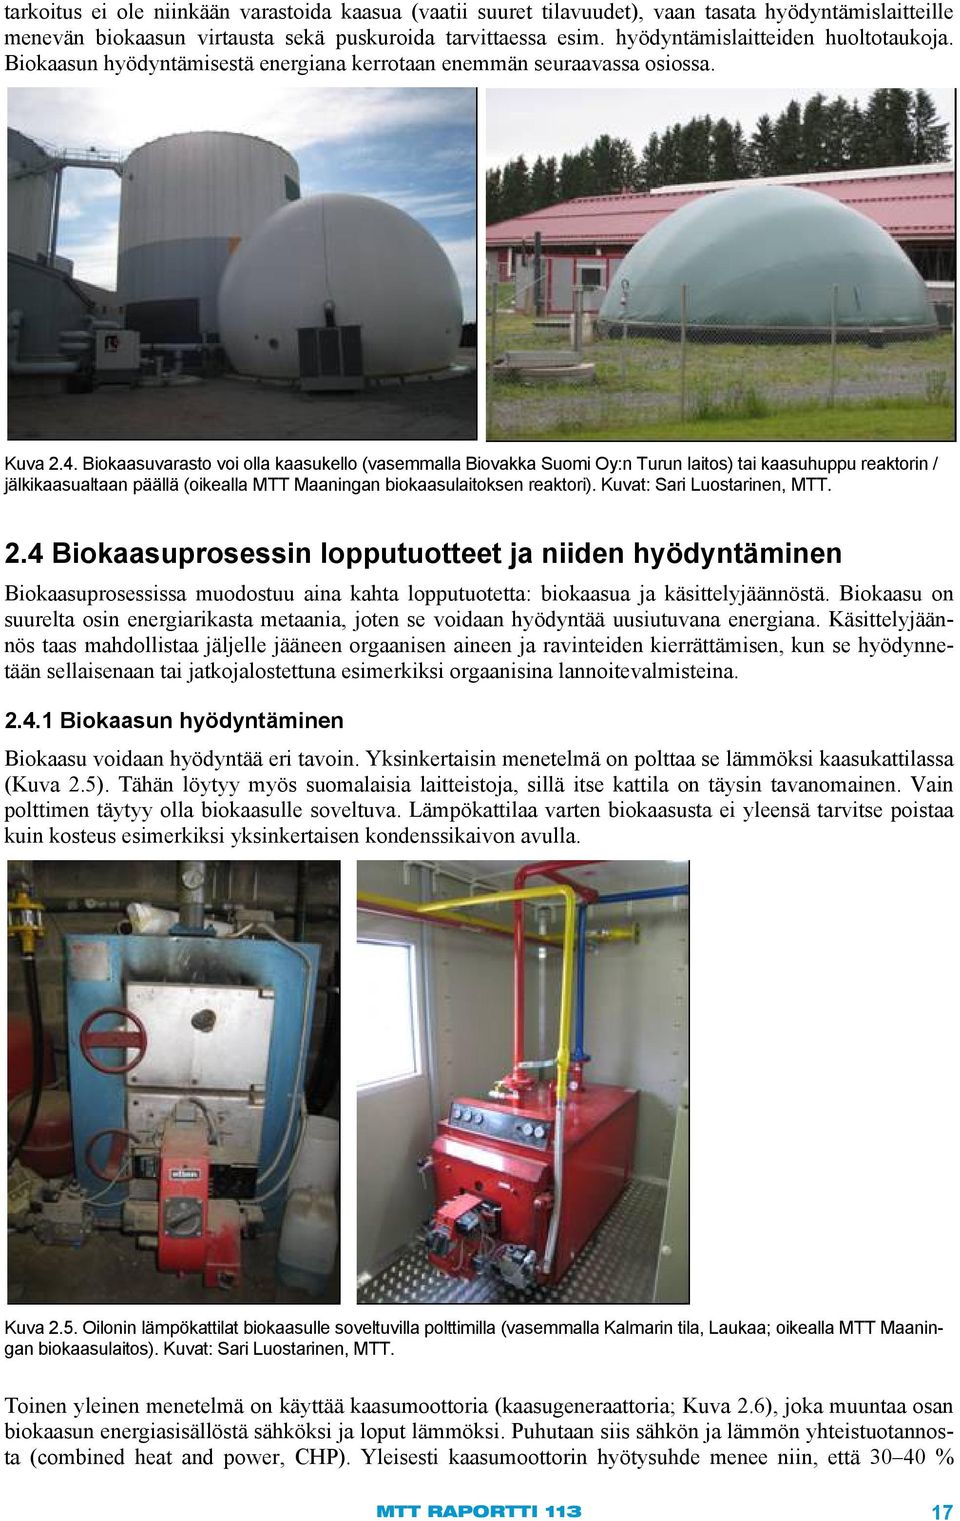 Biokaasuvarasto voi olla kaasukello (vasemmalla Biovakka Suomi Oy:n Turun laitos) tai kaasuhuppu reaktorin / jälkikaasualtaan päällä (oikealla MTT Maaningan biokaasulaitoksen reaktori).